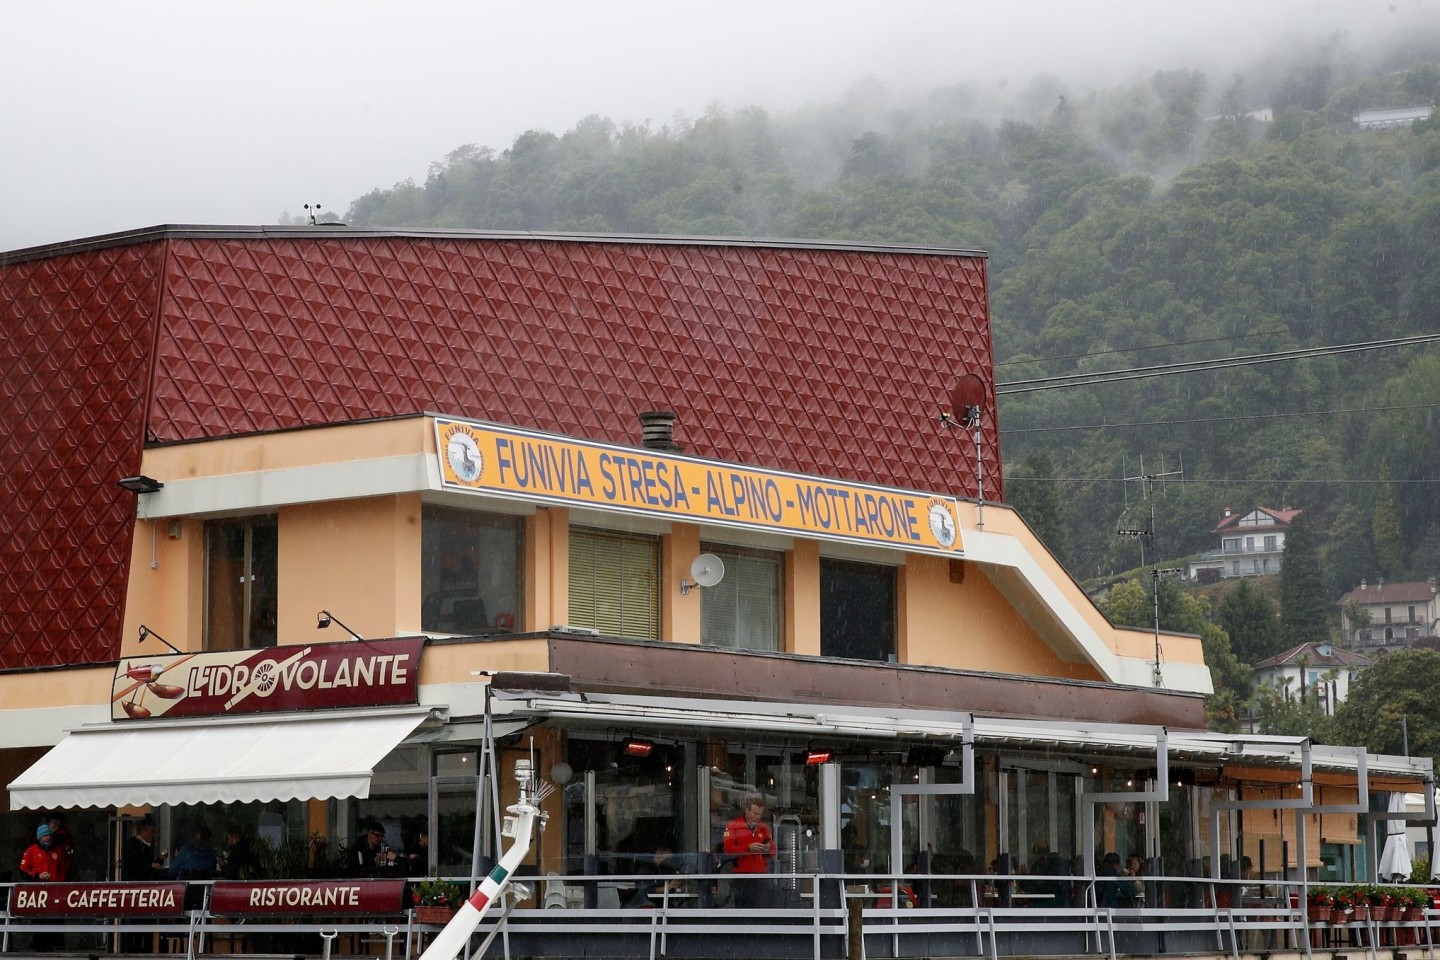 Die Abfahrtsstation der Seilbahn von Stresa nach Mottarone. Beim Absturz einer Gondel haben mindestens 14 Menschen ihr Leben verloren.